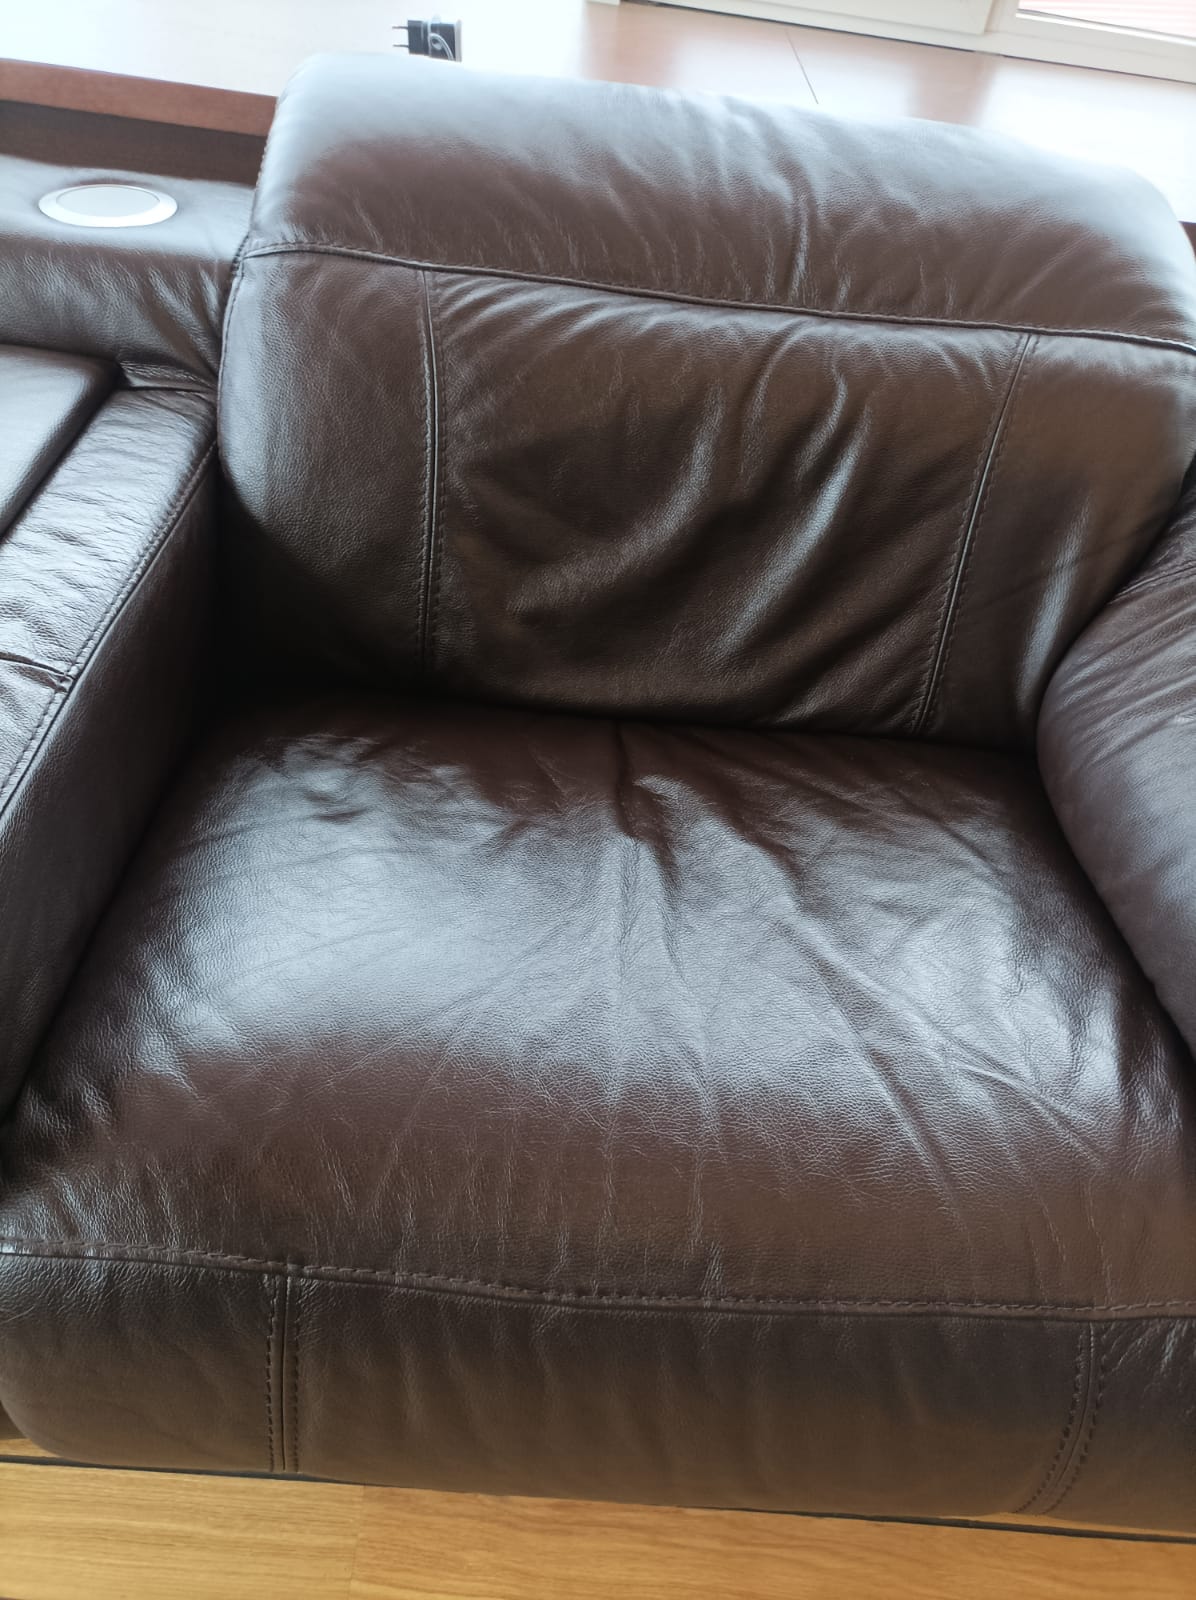 Химчистка кожаного дивана. Кожаные диван из Дагестана.